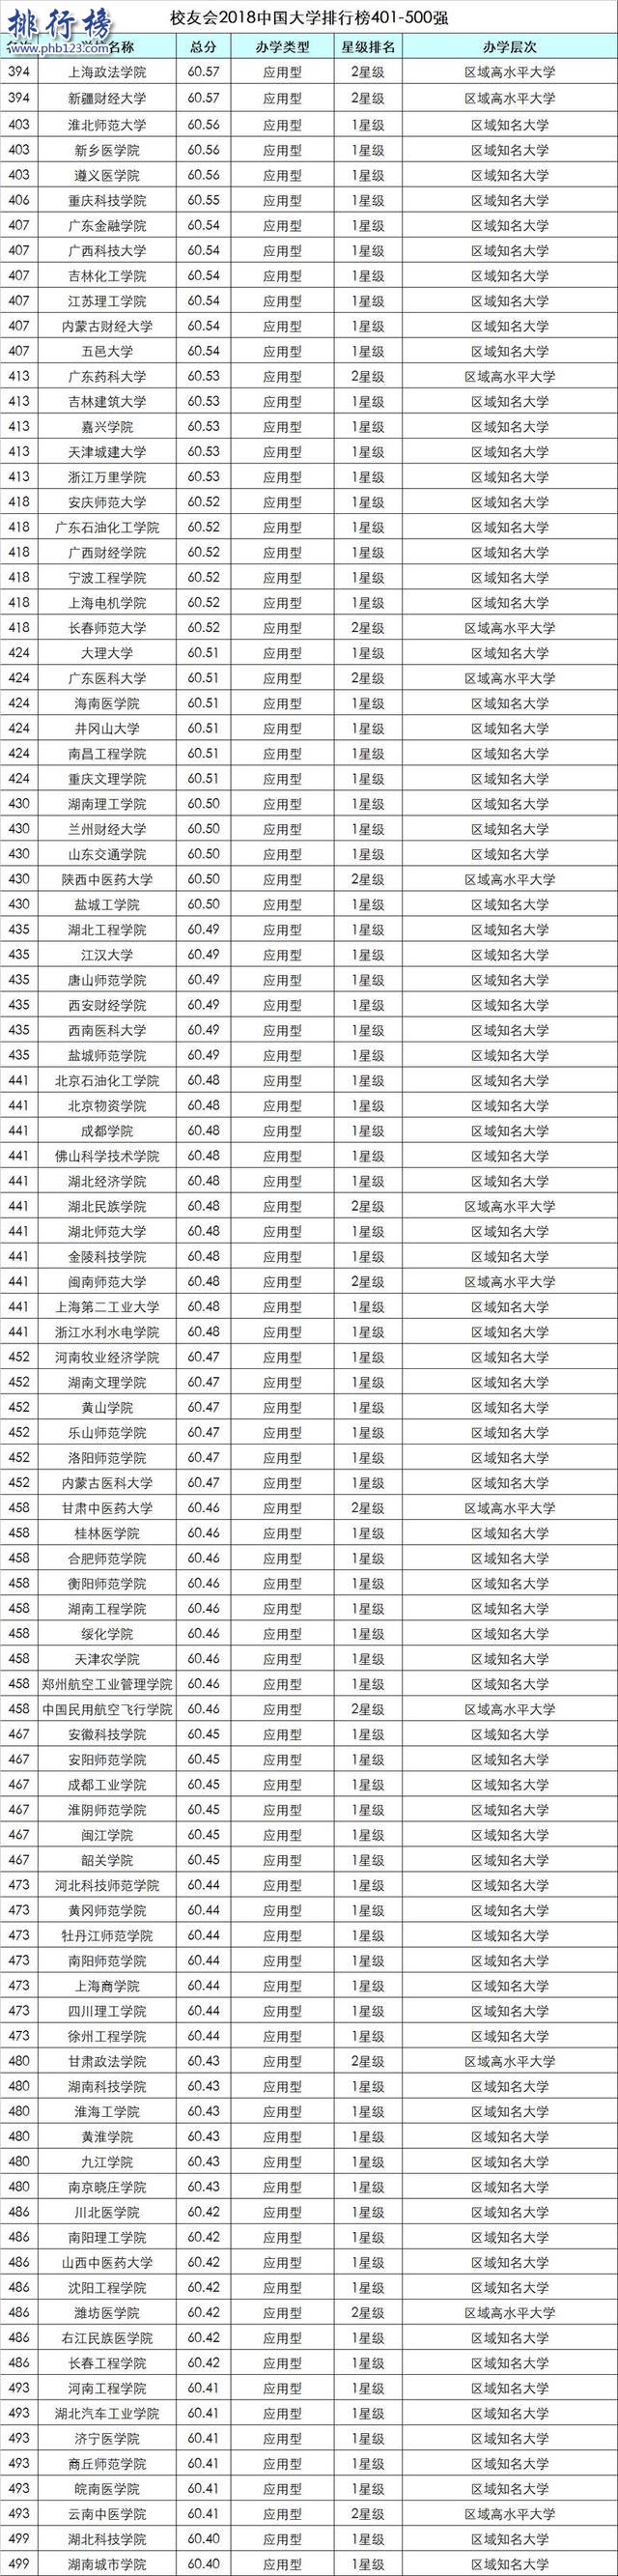 校友會2018中國大學排行榜:北大力壓清華登頂,浙大第3(附完整榜單)